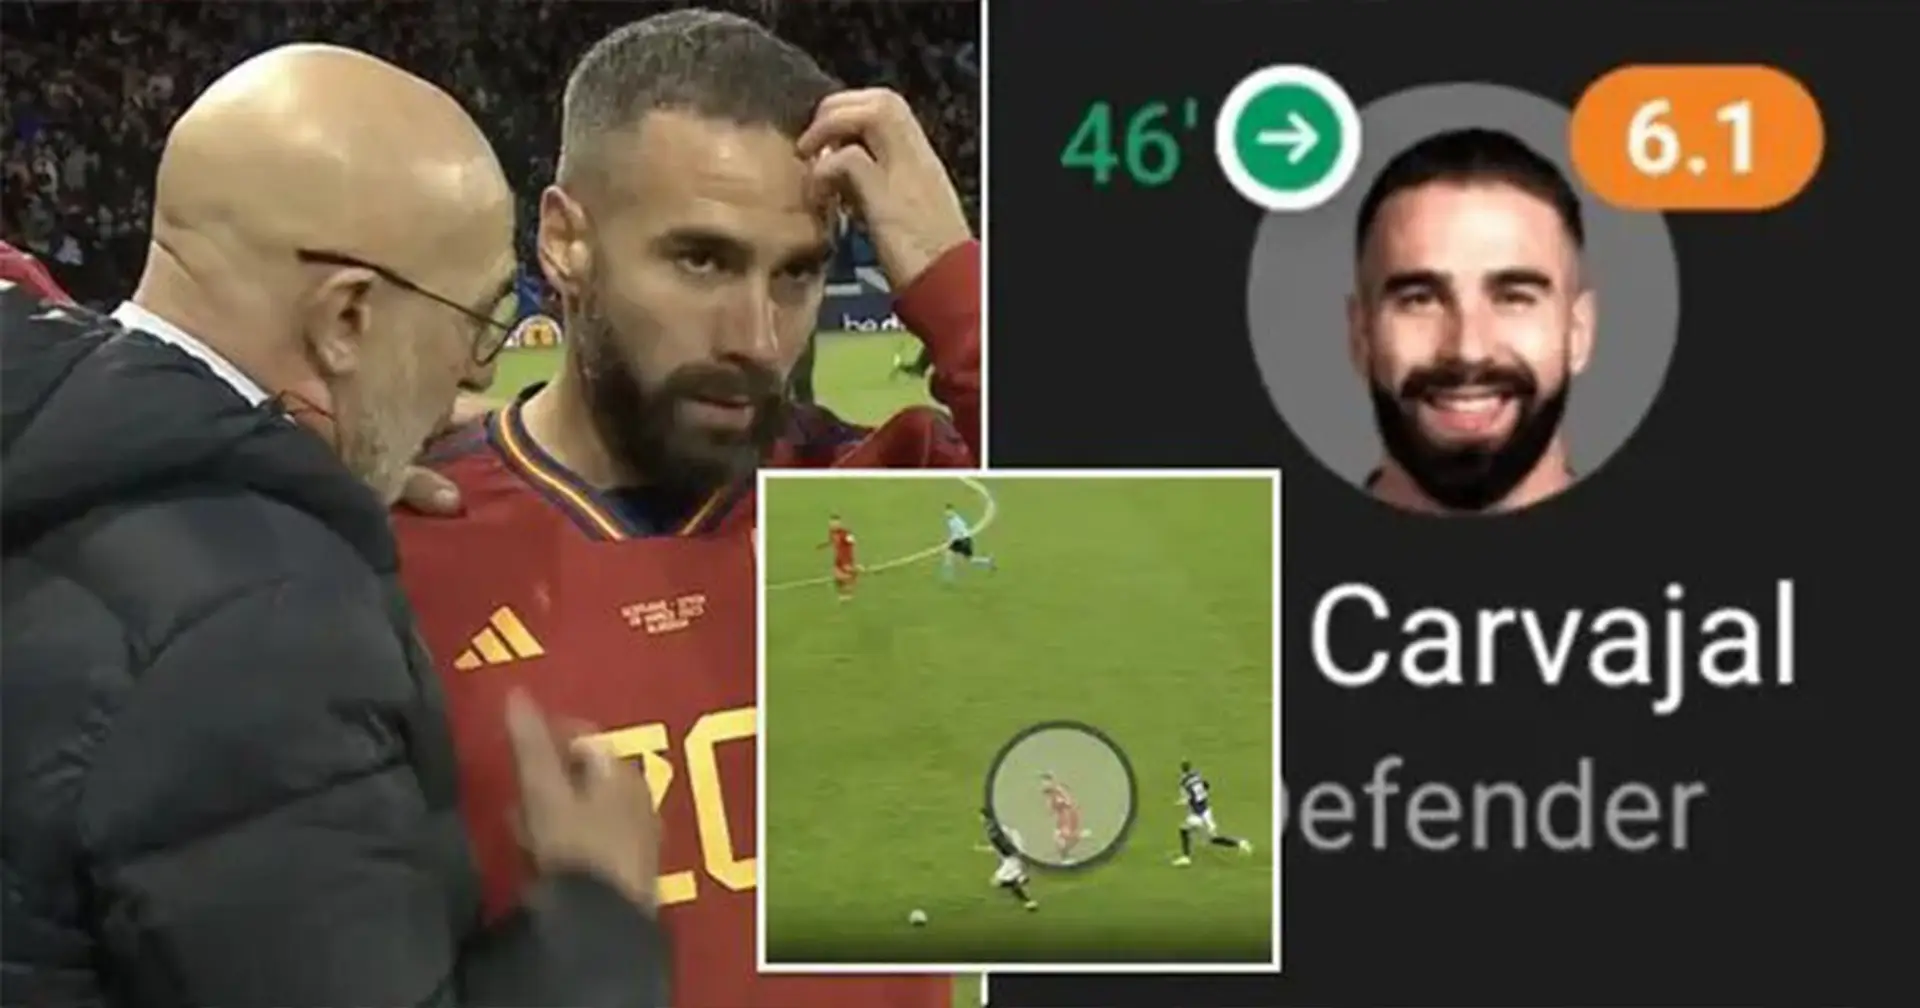 "Ihm heute beim Fußballspielen zuzusehen ist eine Qual": Fans kritisieren Carvajal für das Spiel zwischen Schottland und Spanien